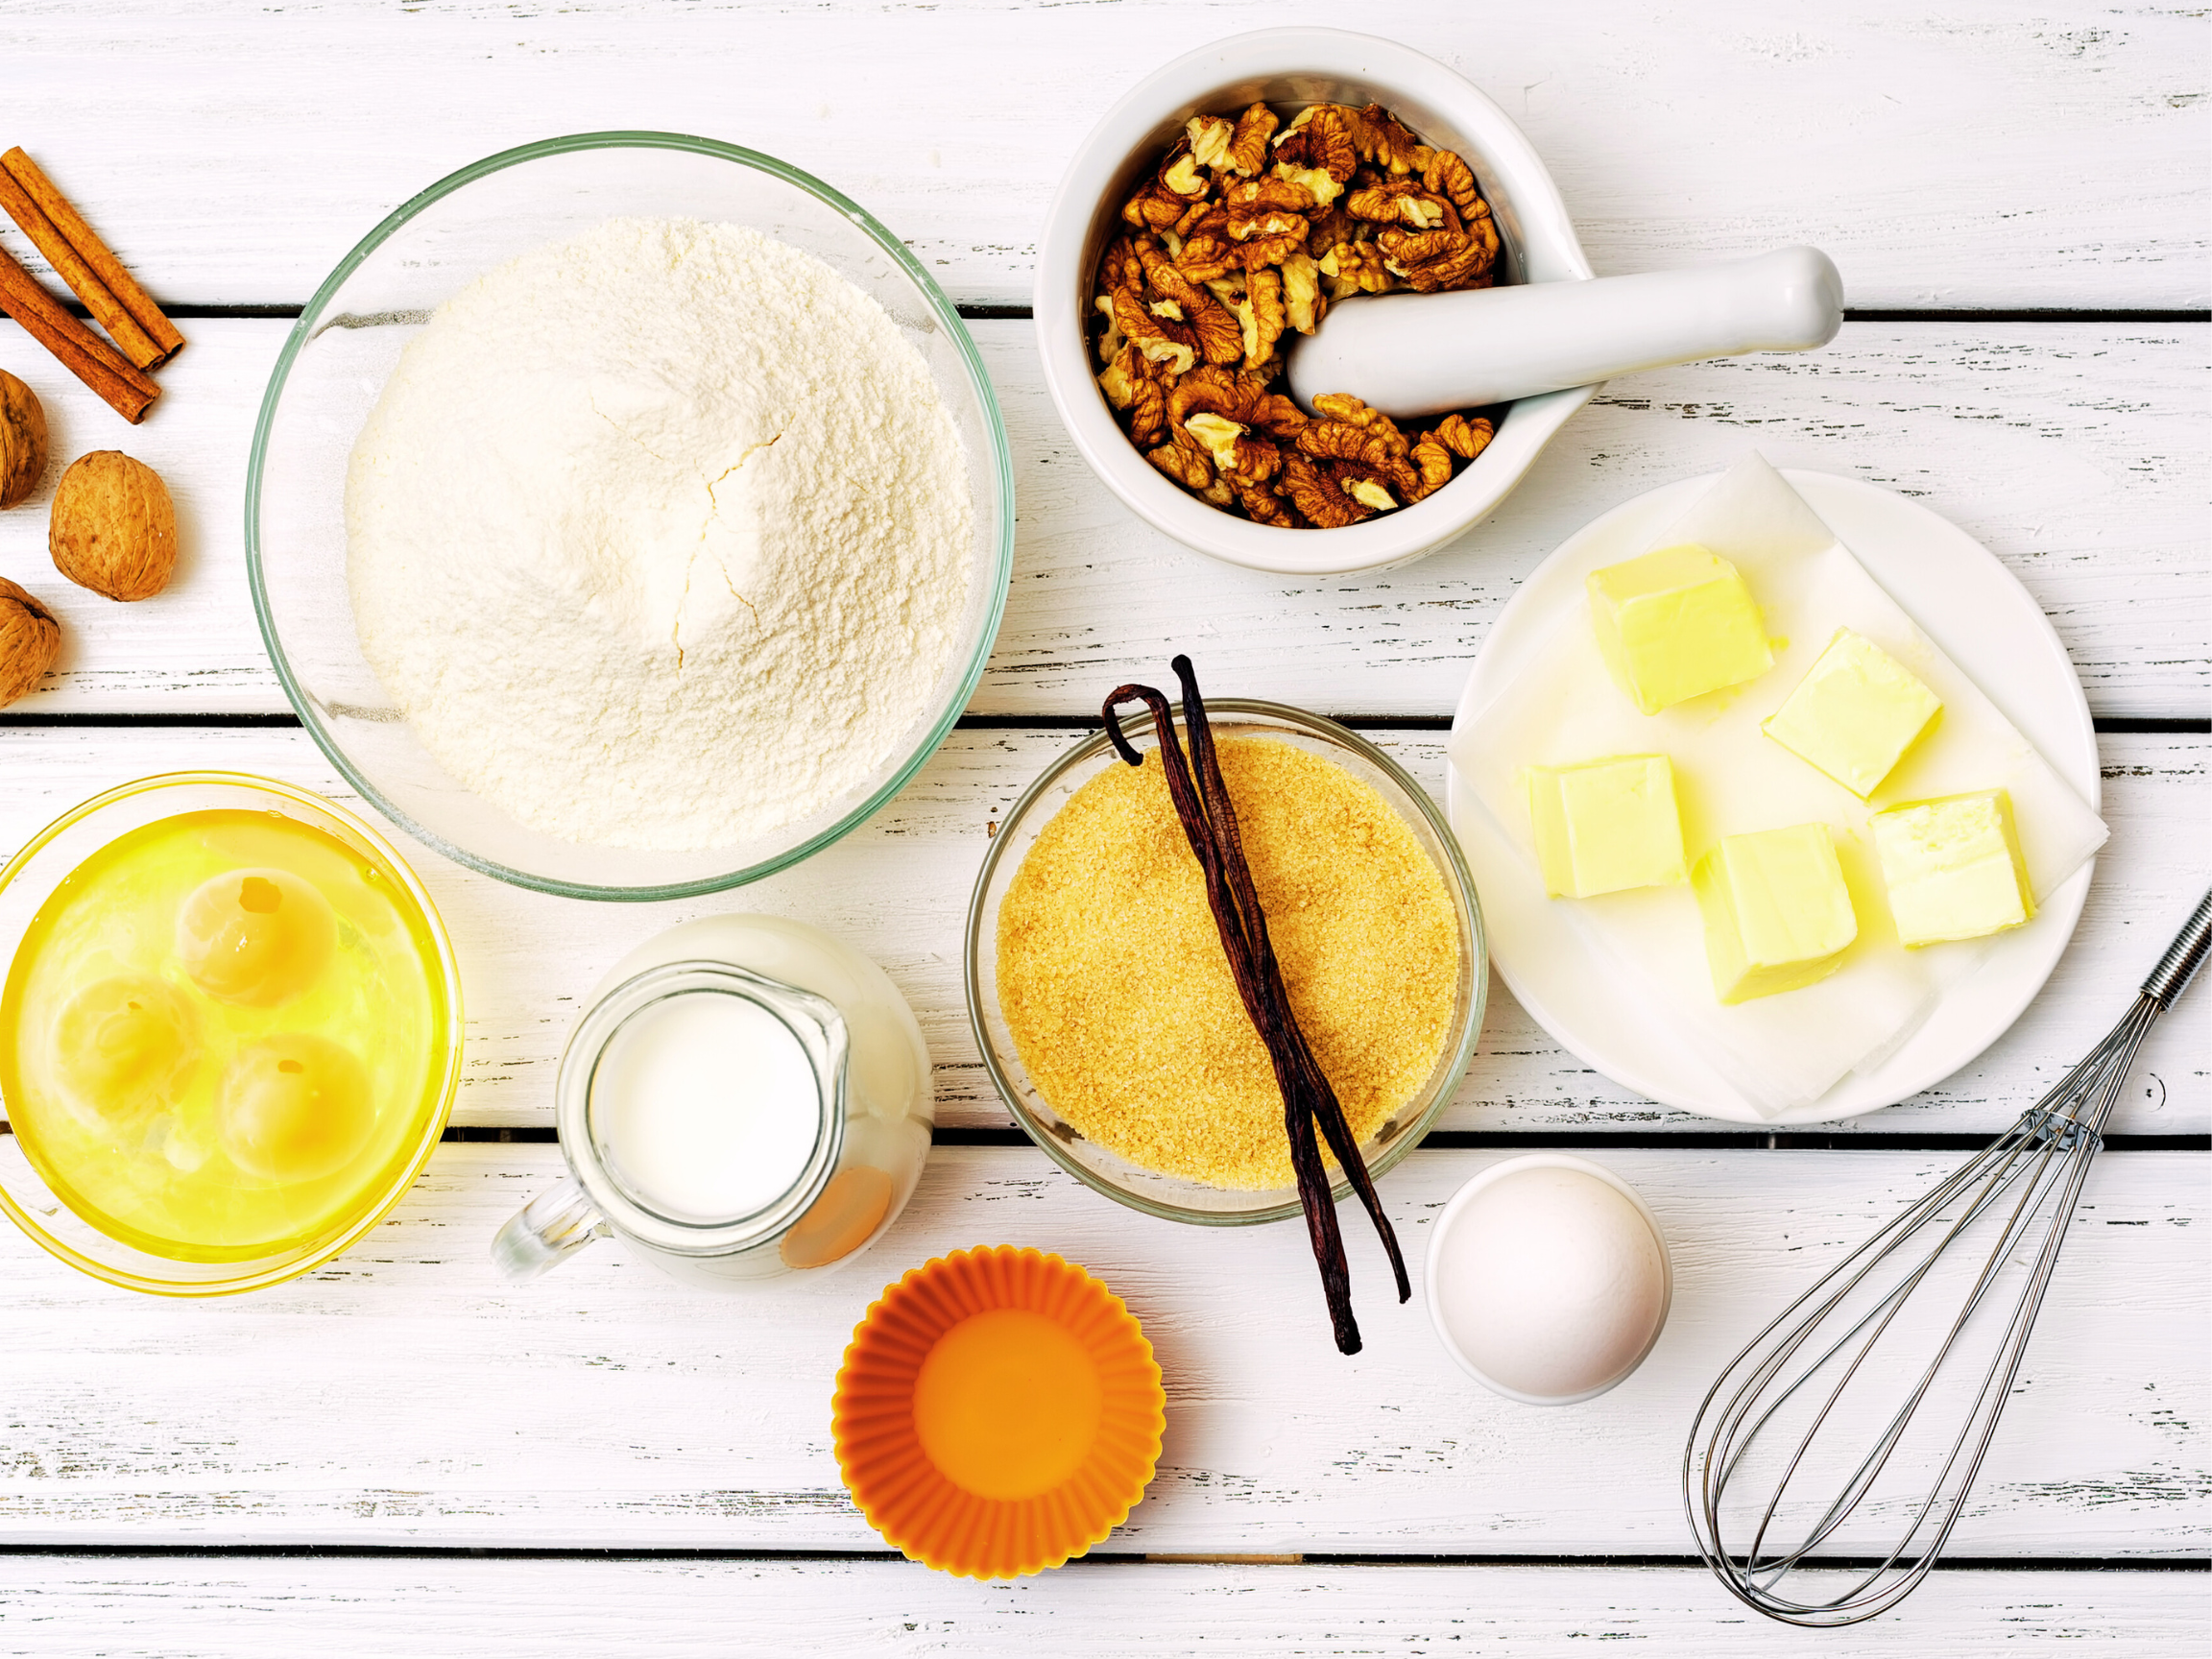 Vanilje er en alsidig og lkker ingrediens, der kan bruges til at tilfje smag og aroma til en bred vifte af retter og opskrifter. Her er nogle mder, du kan bruge vanilje p:  Bagning: Vanilje er en uundvrlig ingrediens i mange bagvrksopskrifter, herunder kager, cookies, muffins, cupcakes og brd. Du kan bruge vaniljeekstrakt, vaniljepulver eller vaniljestnger til at tilfje en lkker vaniljesmag til dine bagvrk.  Desserter: Vanilje er en klassisk smag i mange desserter, herunder is, pudding, creme brulee, fldeboller, panna cotta og cheesecake. Du kan bruge vaniljeekstrakt, vaniljepulver eller vaniljestnger til at tilfje en subtil vaniljesmag og aroma til dine desserter.